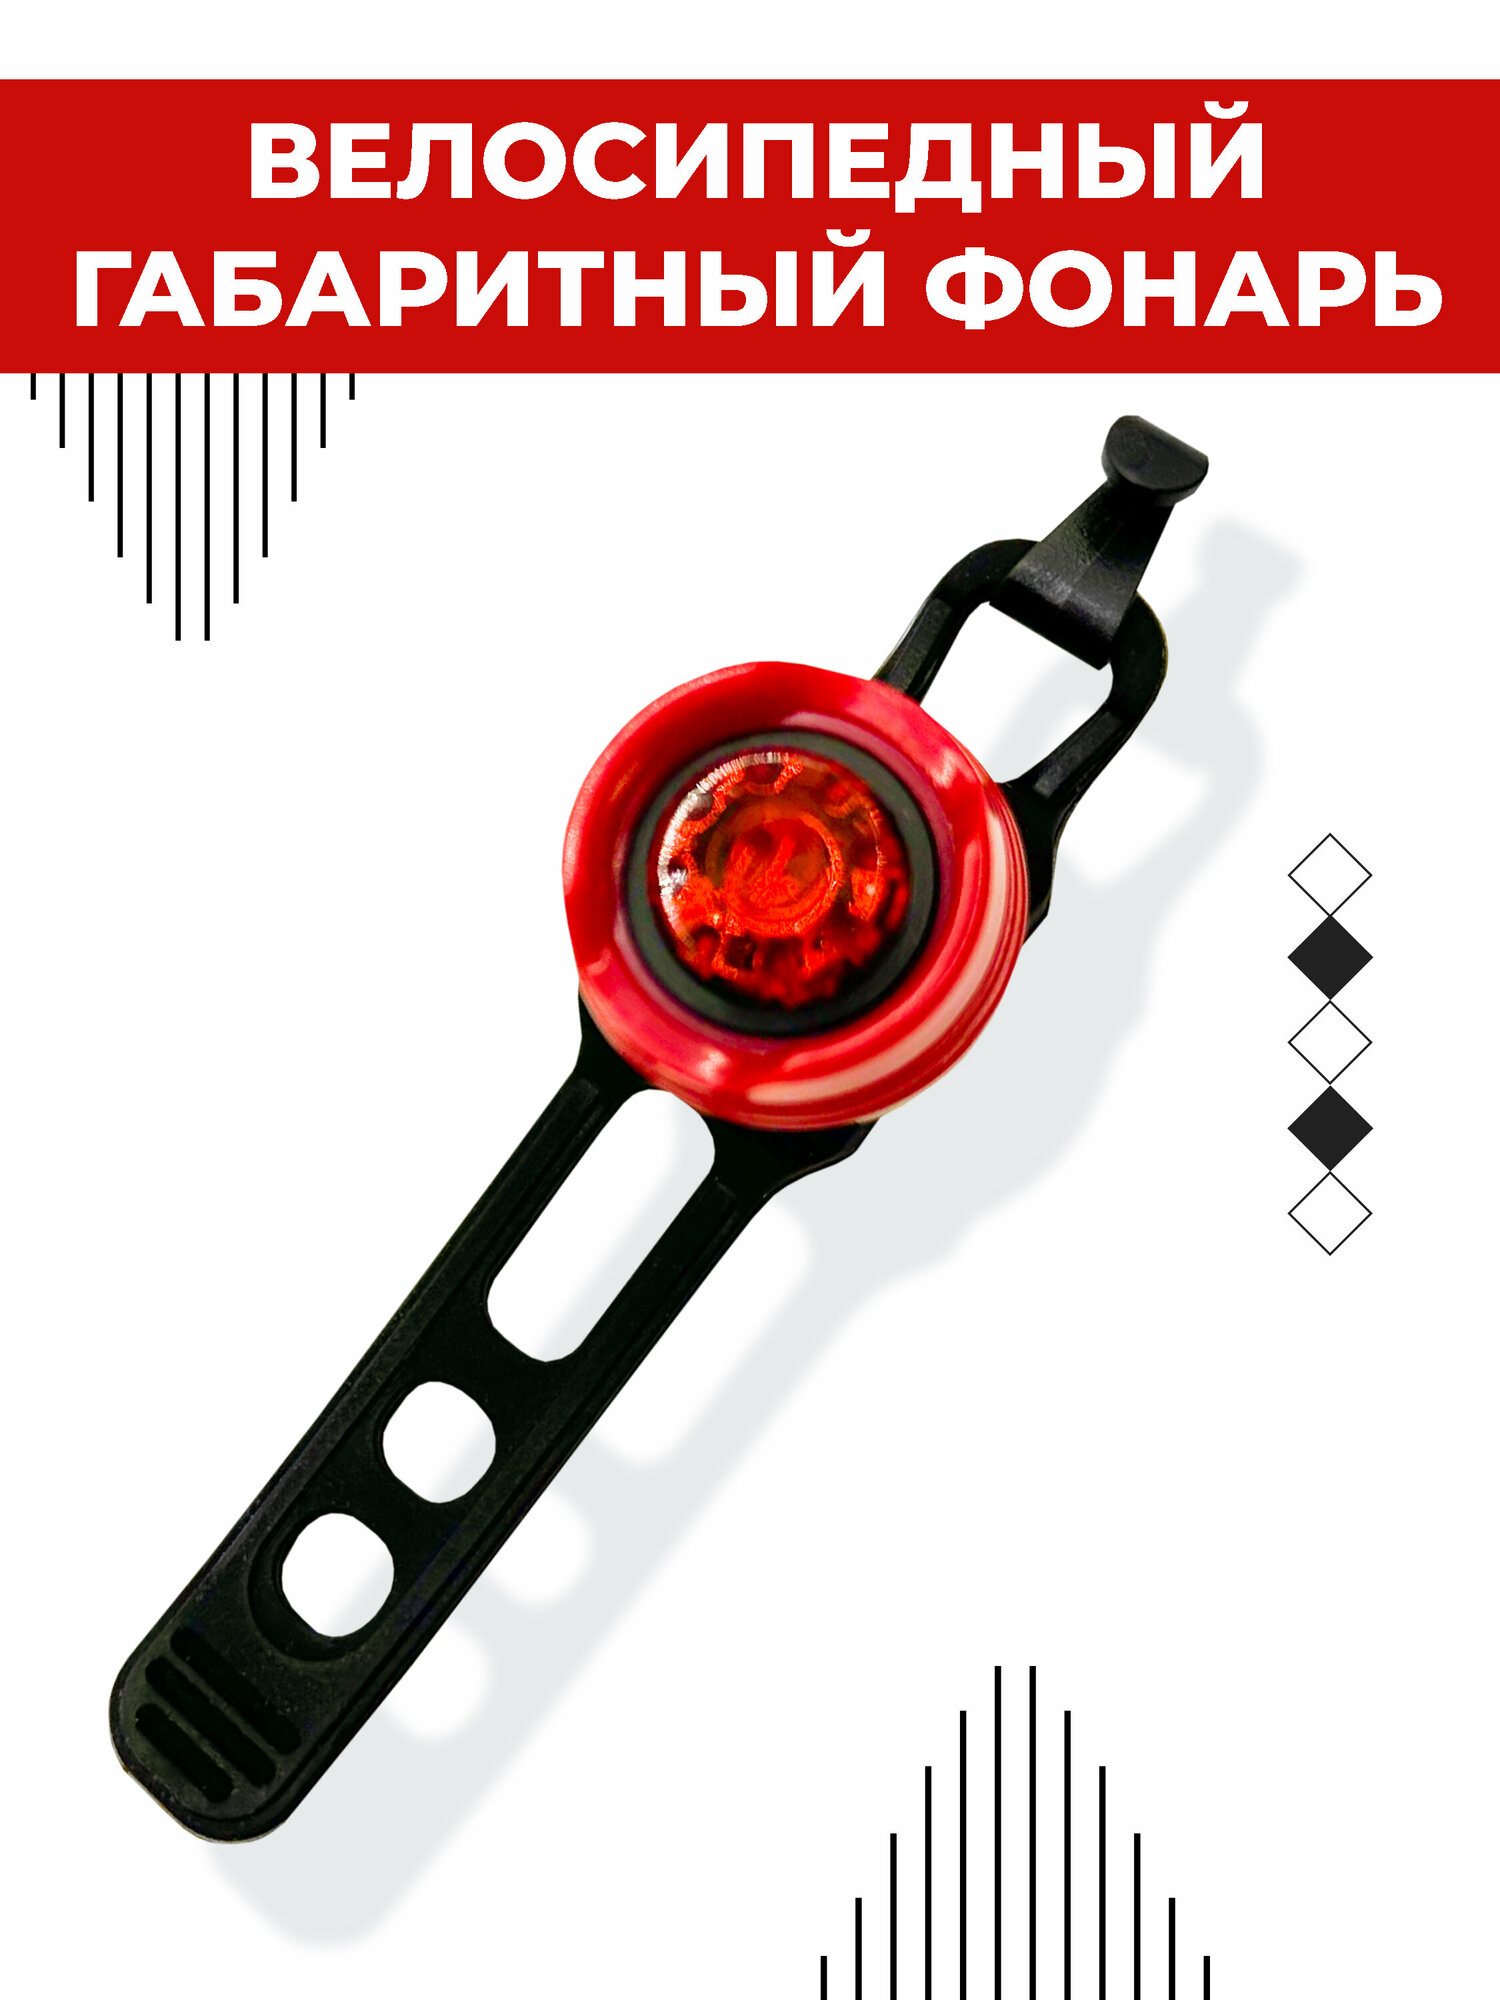 Велосипедный габаритный фонарь Boomshakalaka, питание от батареек (CR2032, 2 шт.), светодиодный, задний